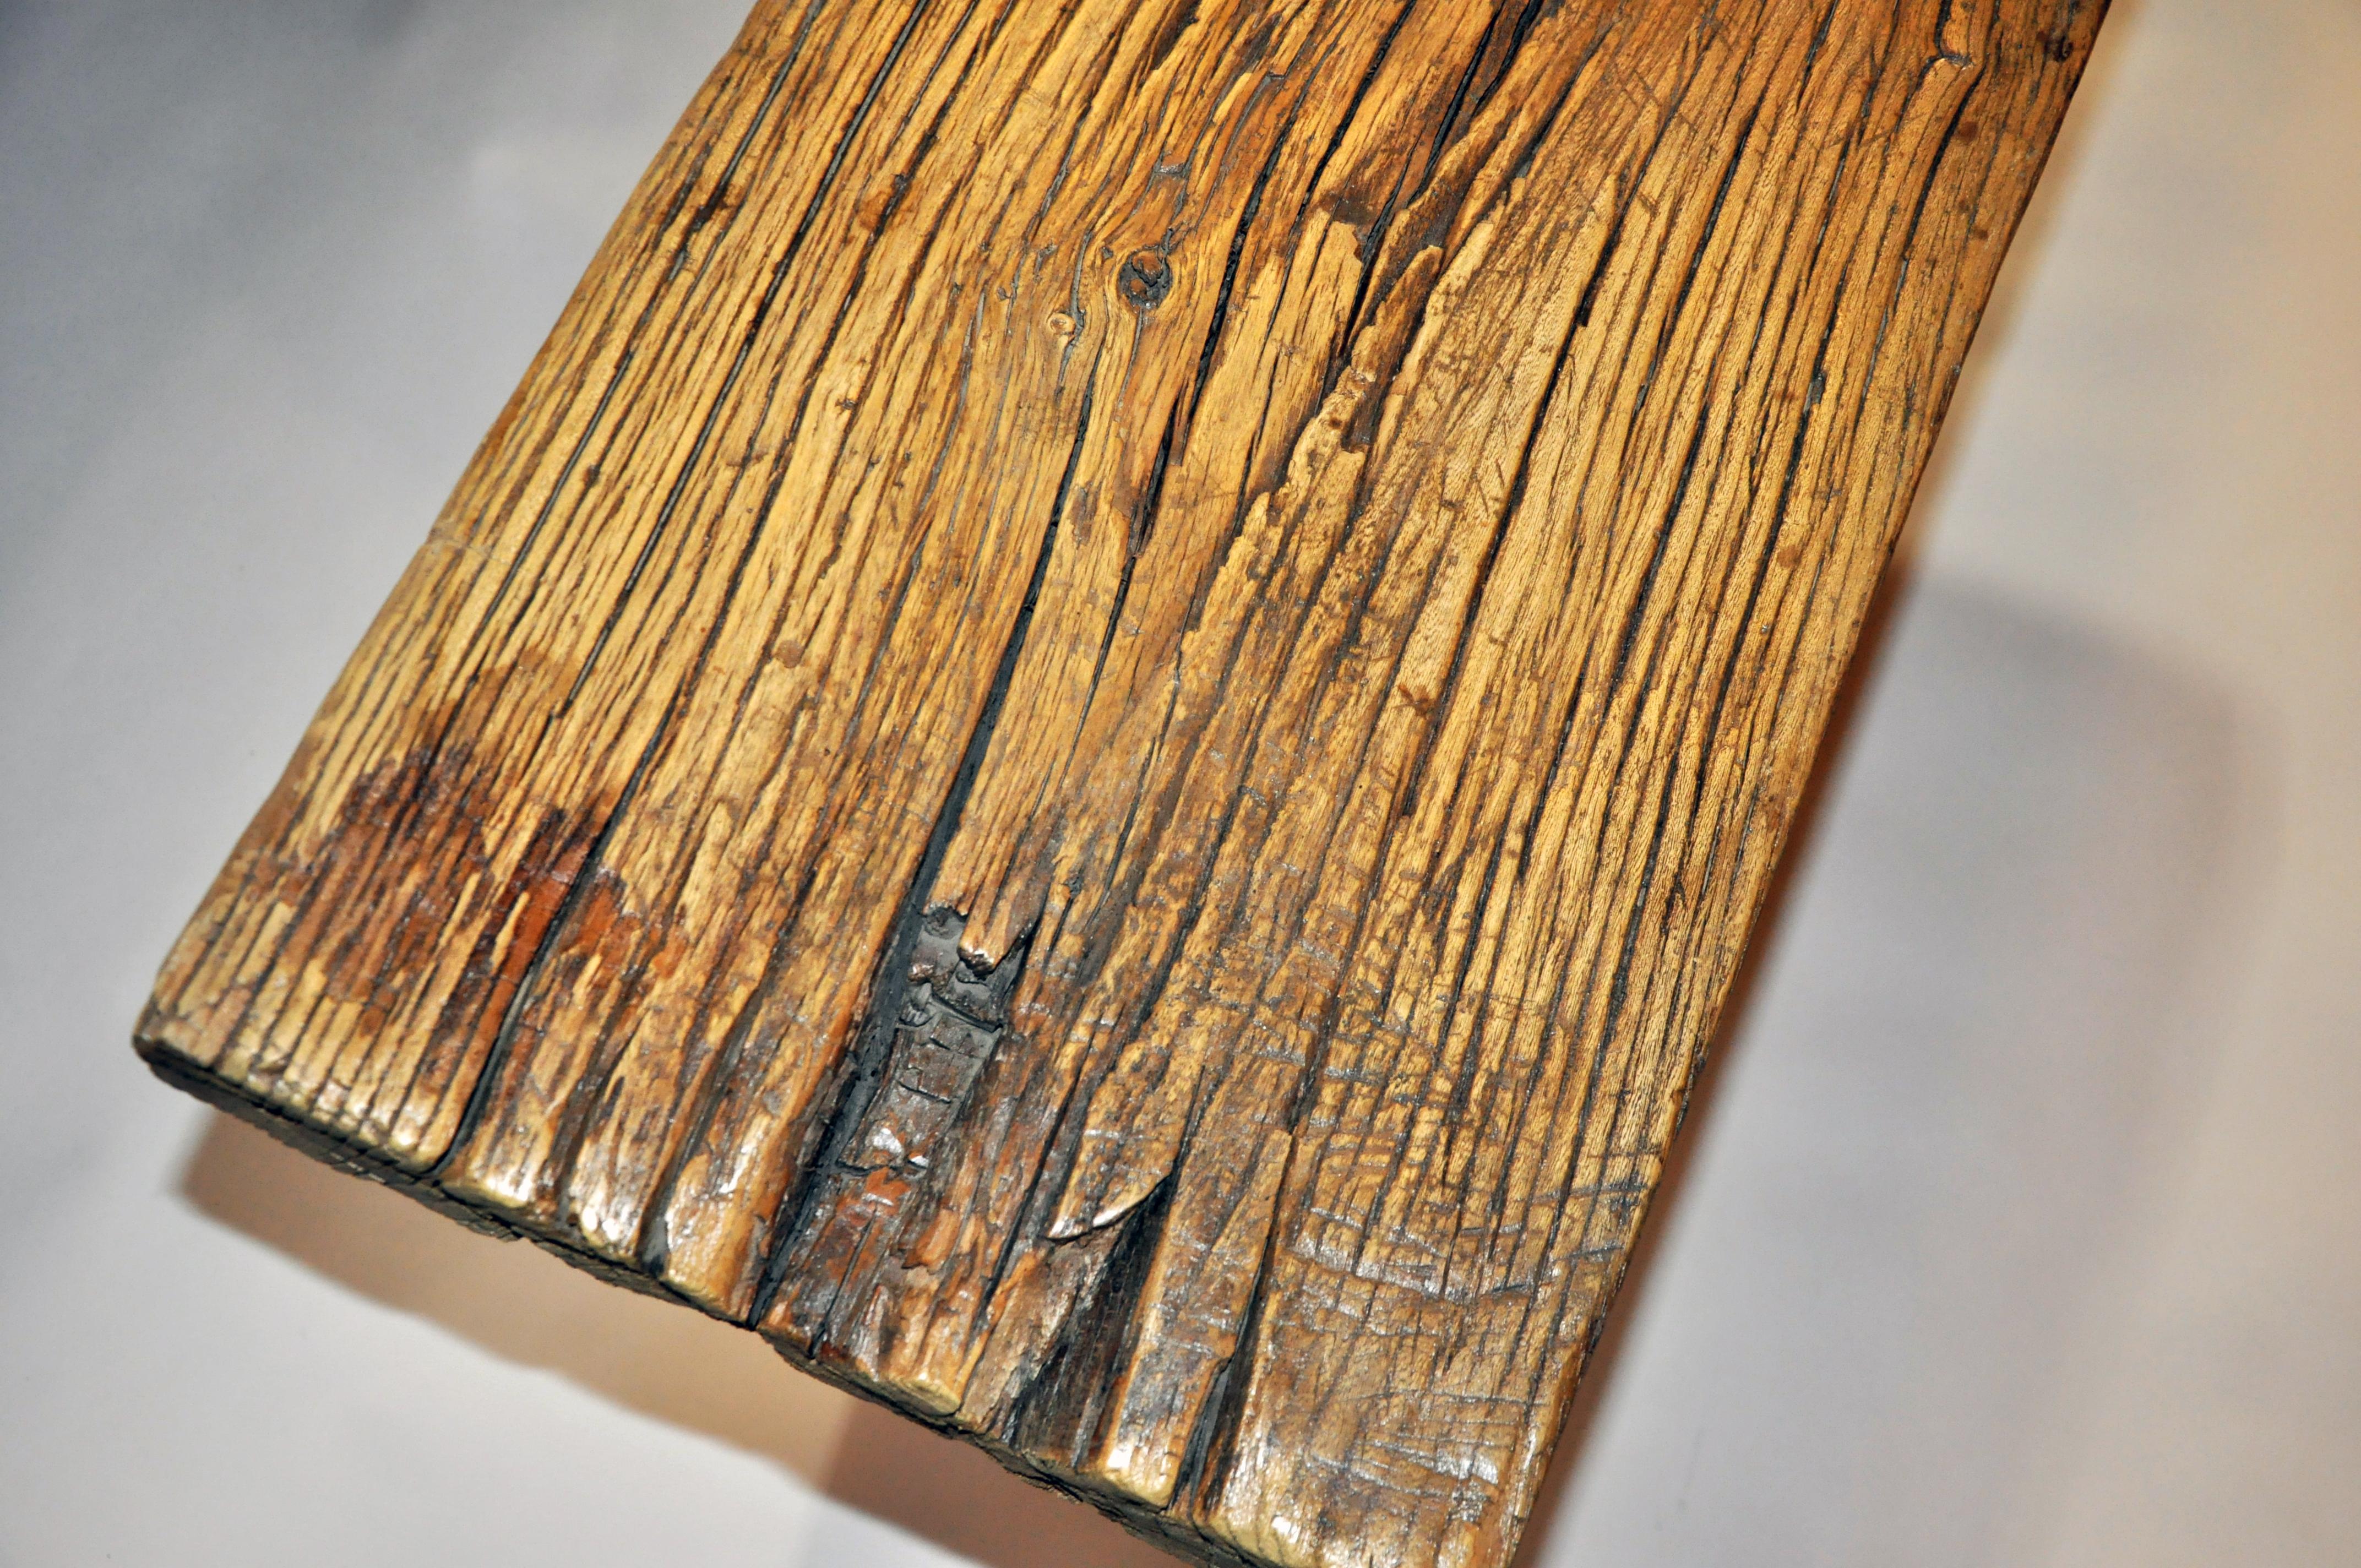 Custom Made Cedar Wood Altar Table 10